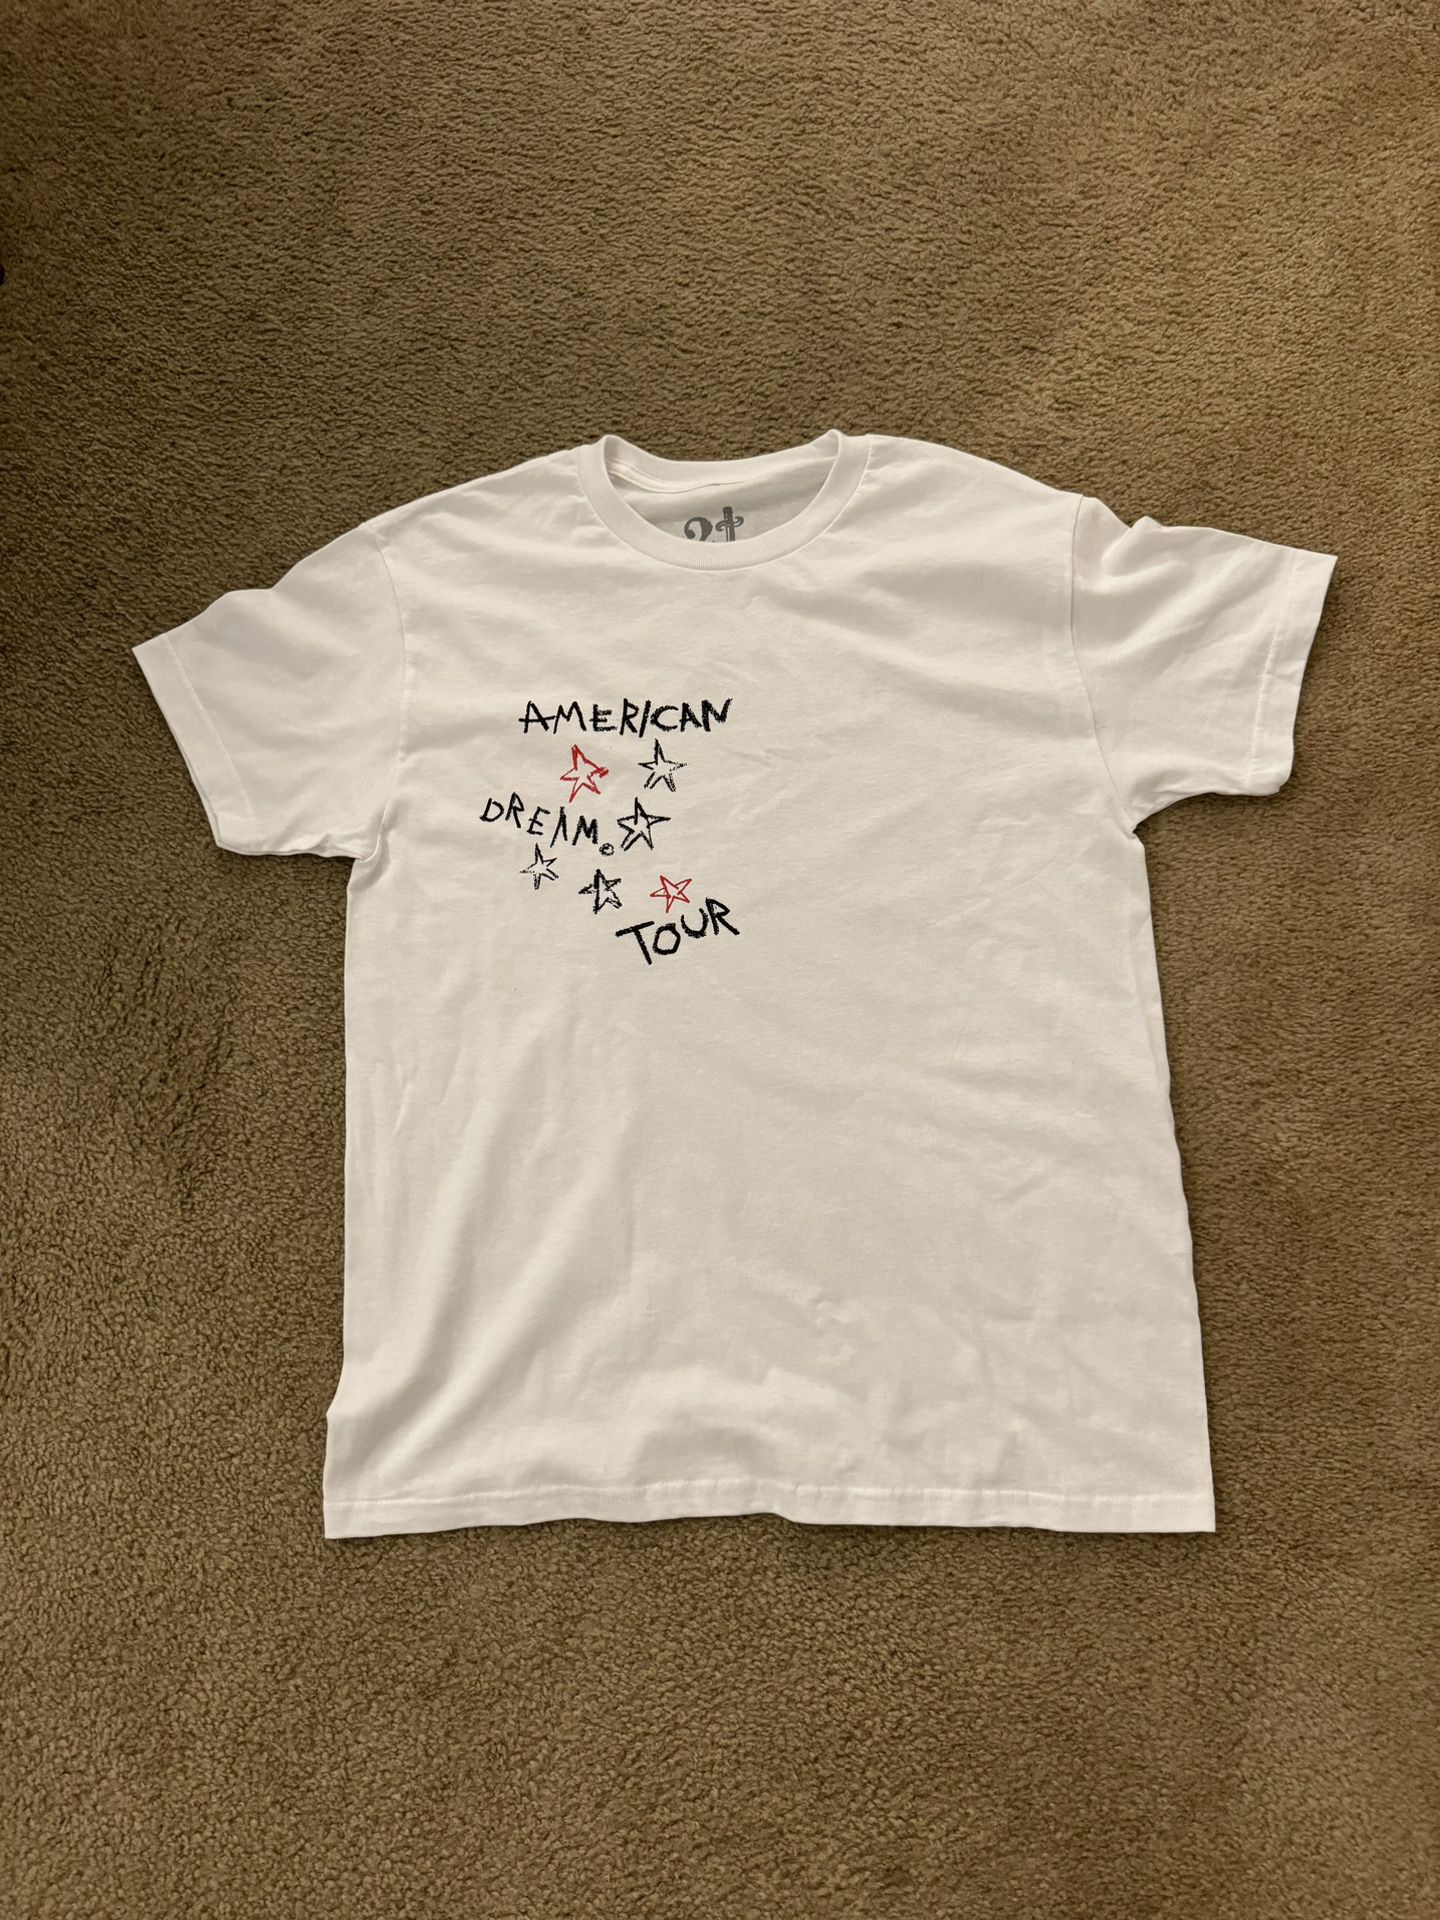 21 Savage American Dream Tour Merch T Shirt 